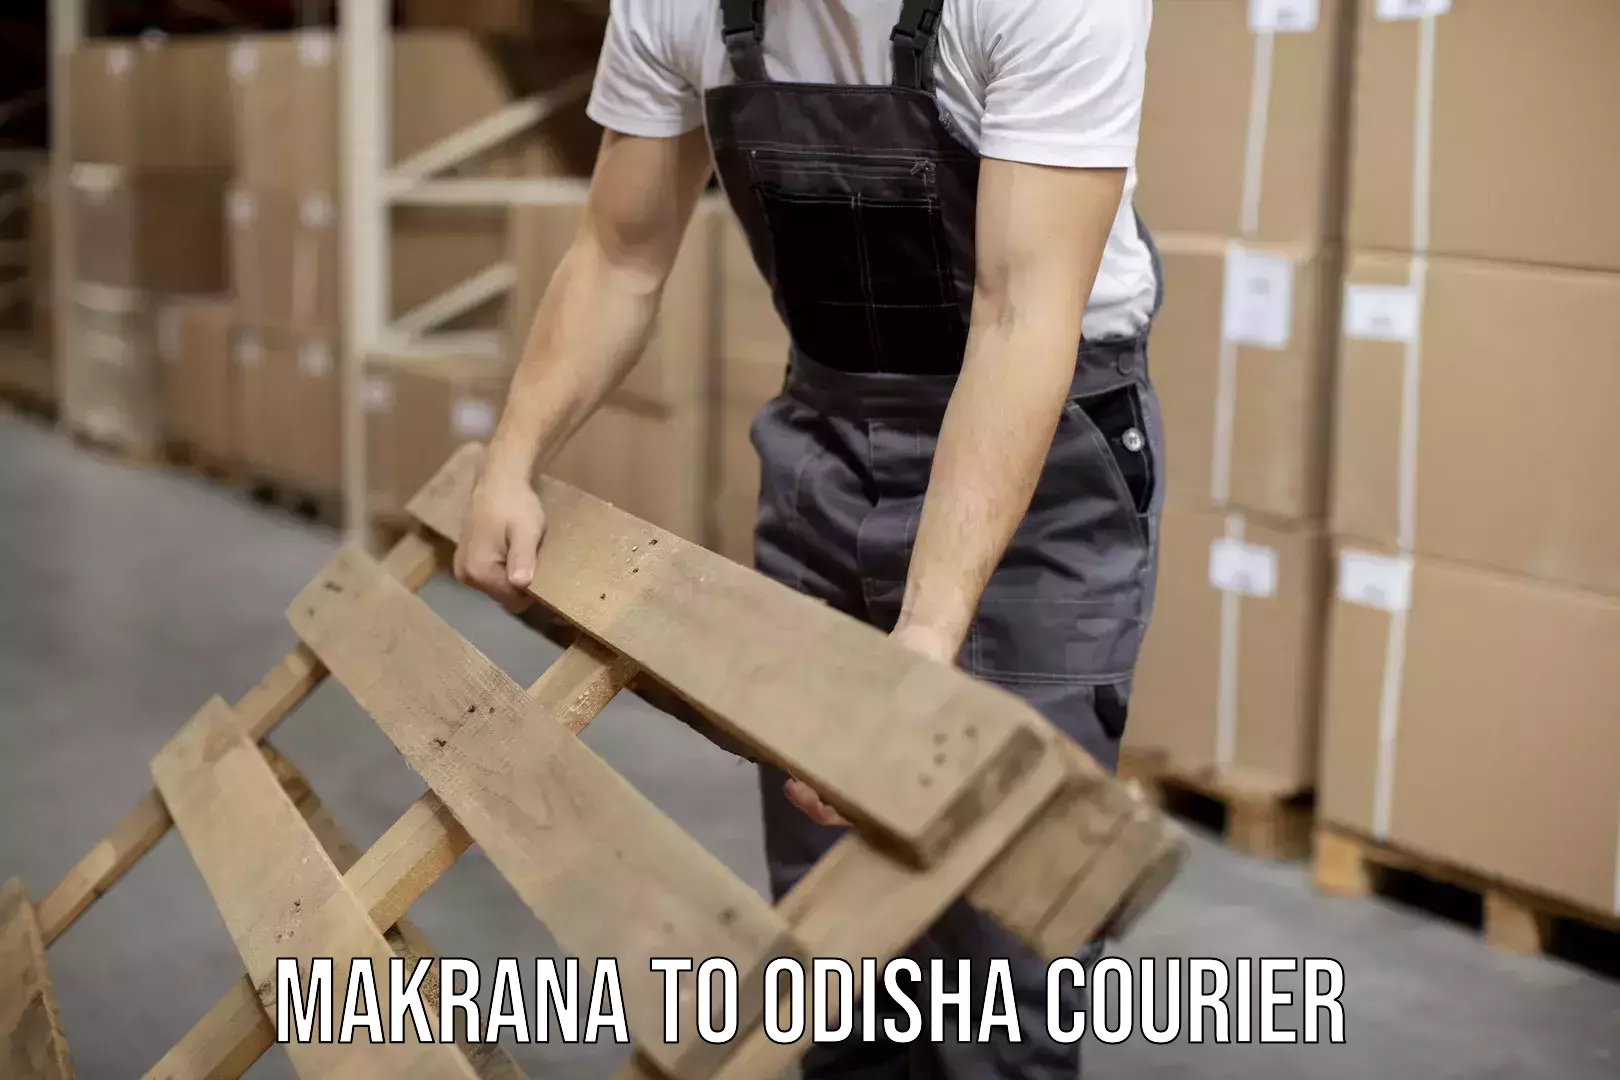 User-friendly delivery service Makrana to Odisha